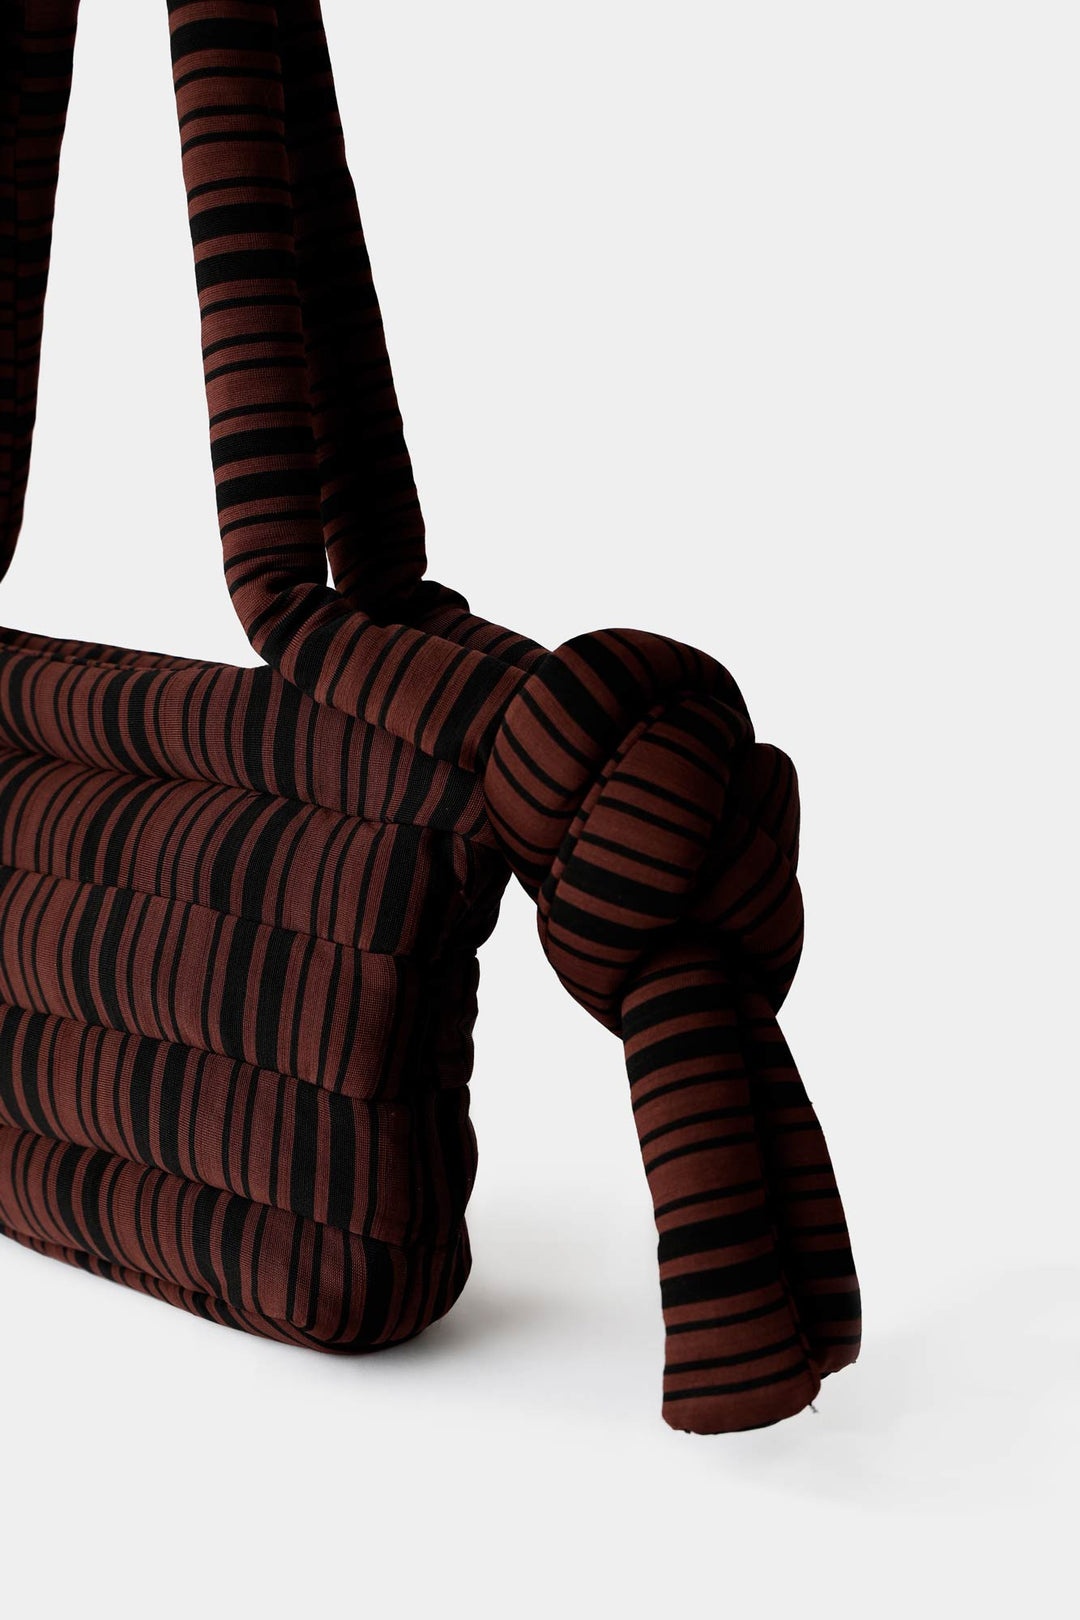 TUBO BAG / black & brown stripes - 2